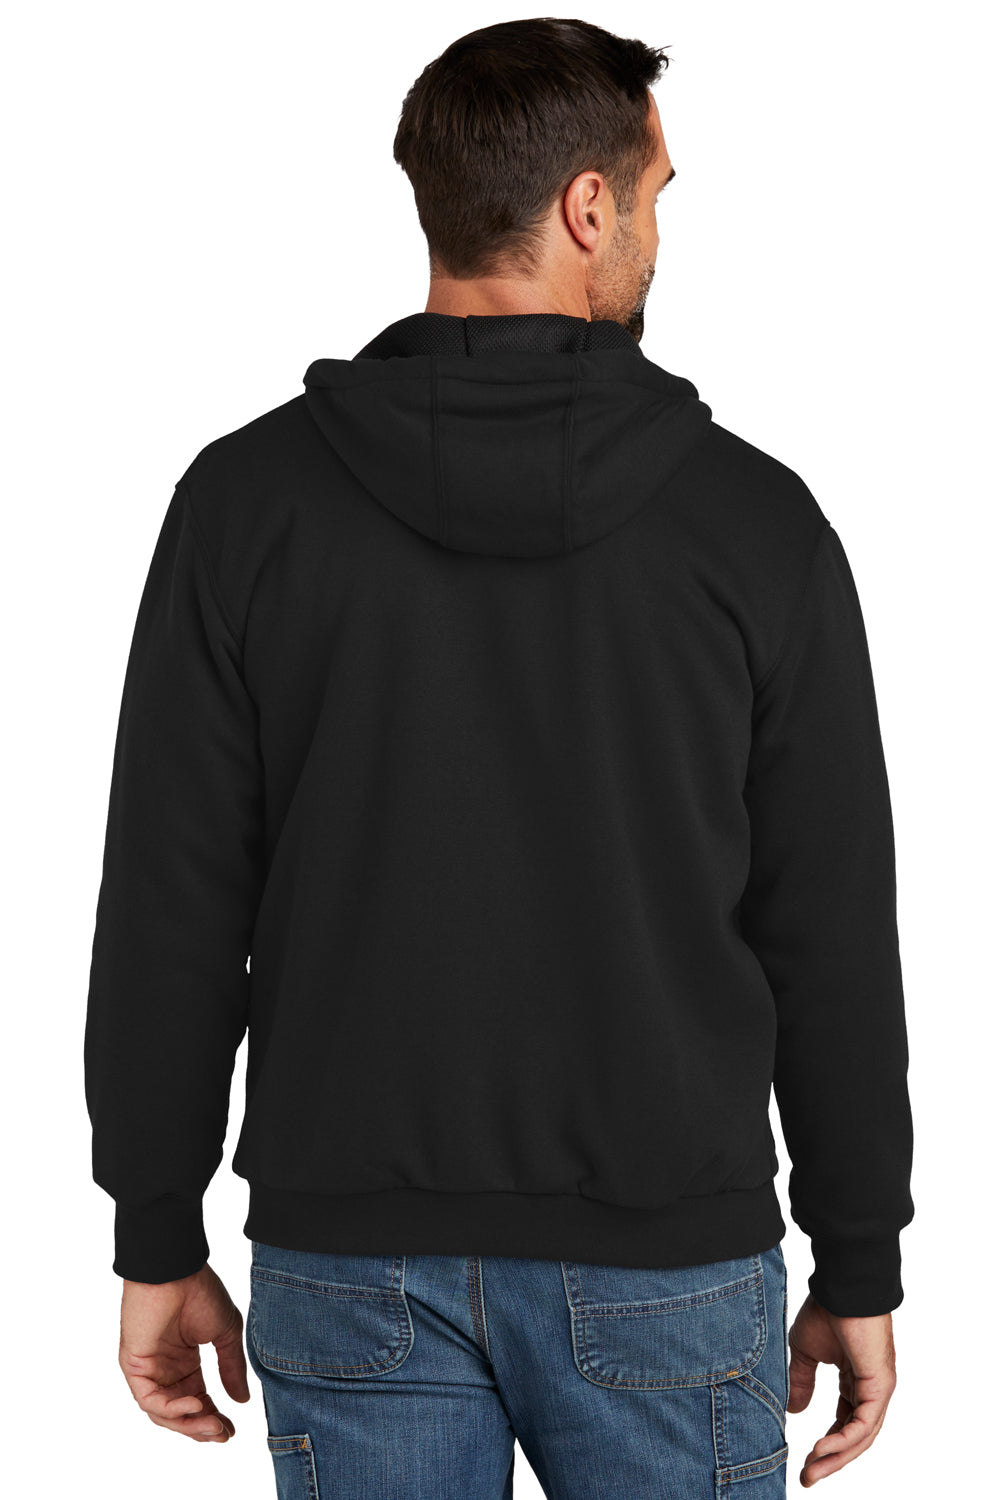 Carhartt CT104078 Mens Water Resistant Thermal Lined Full Zip Hooded Sweatshirt Hoodie Black Model Back